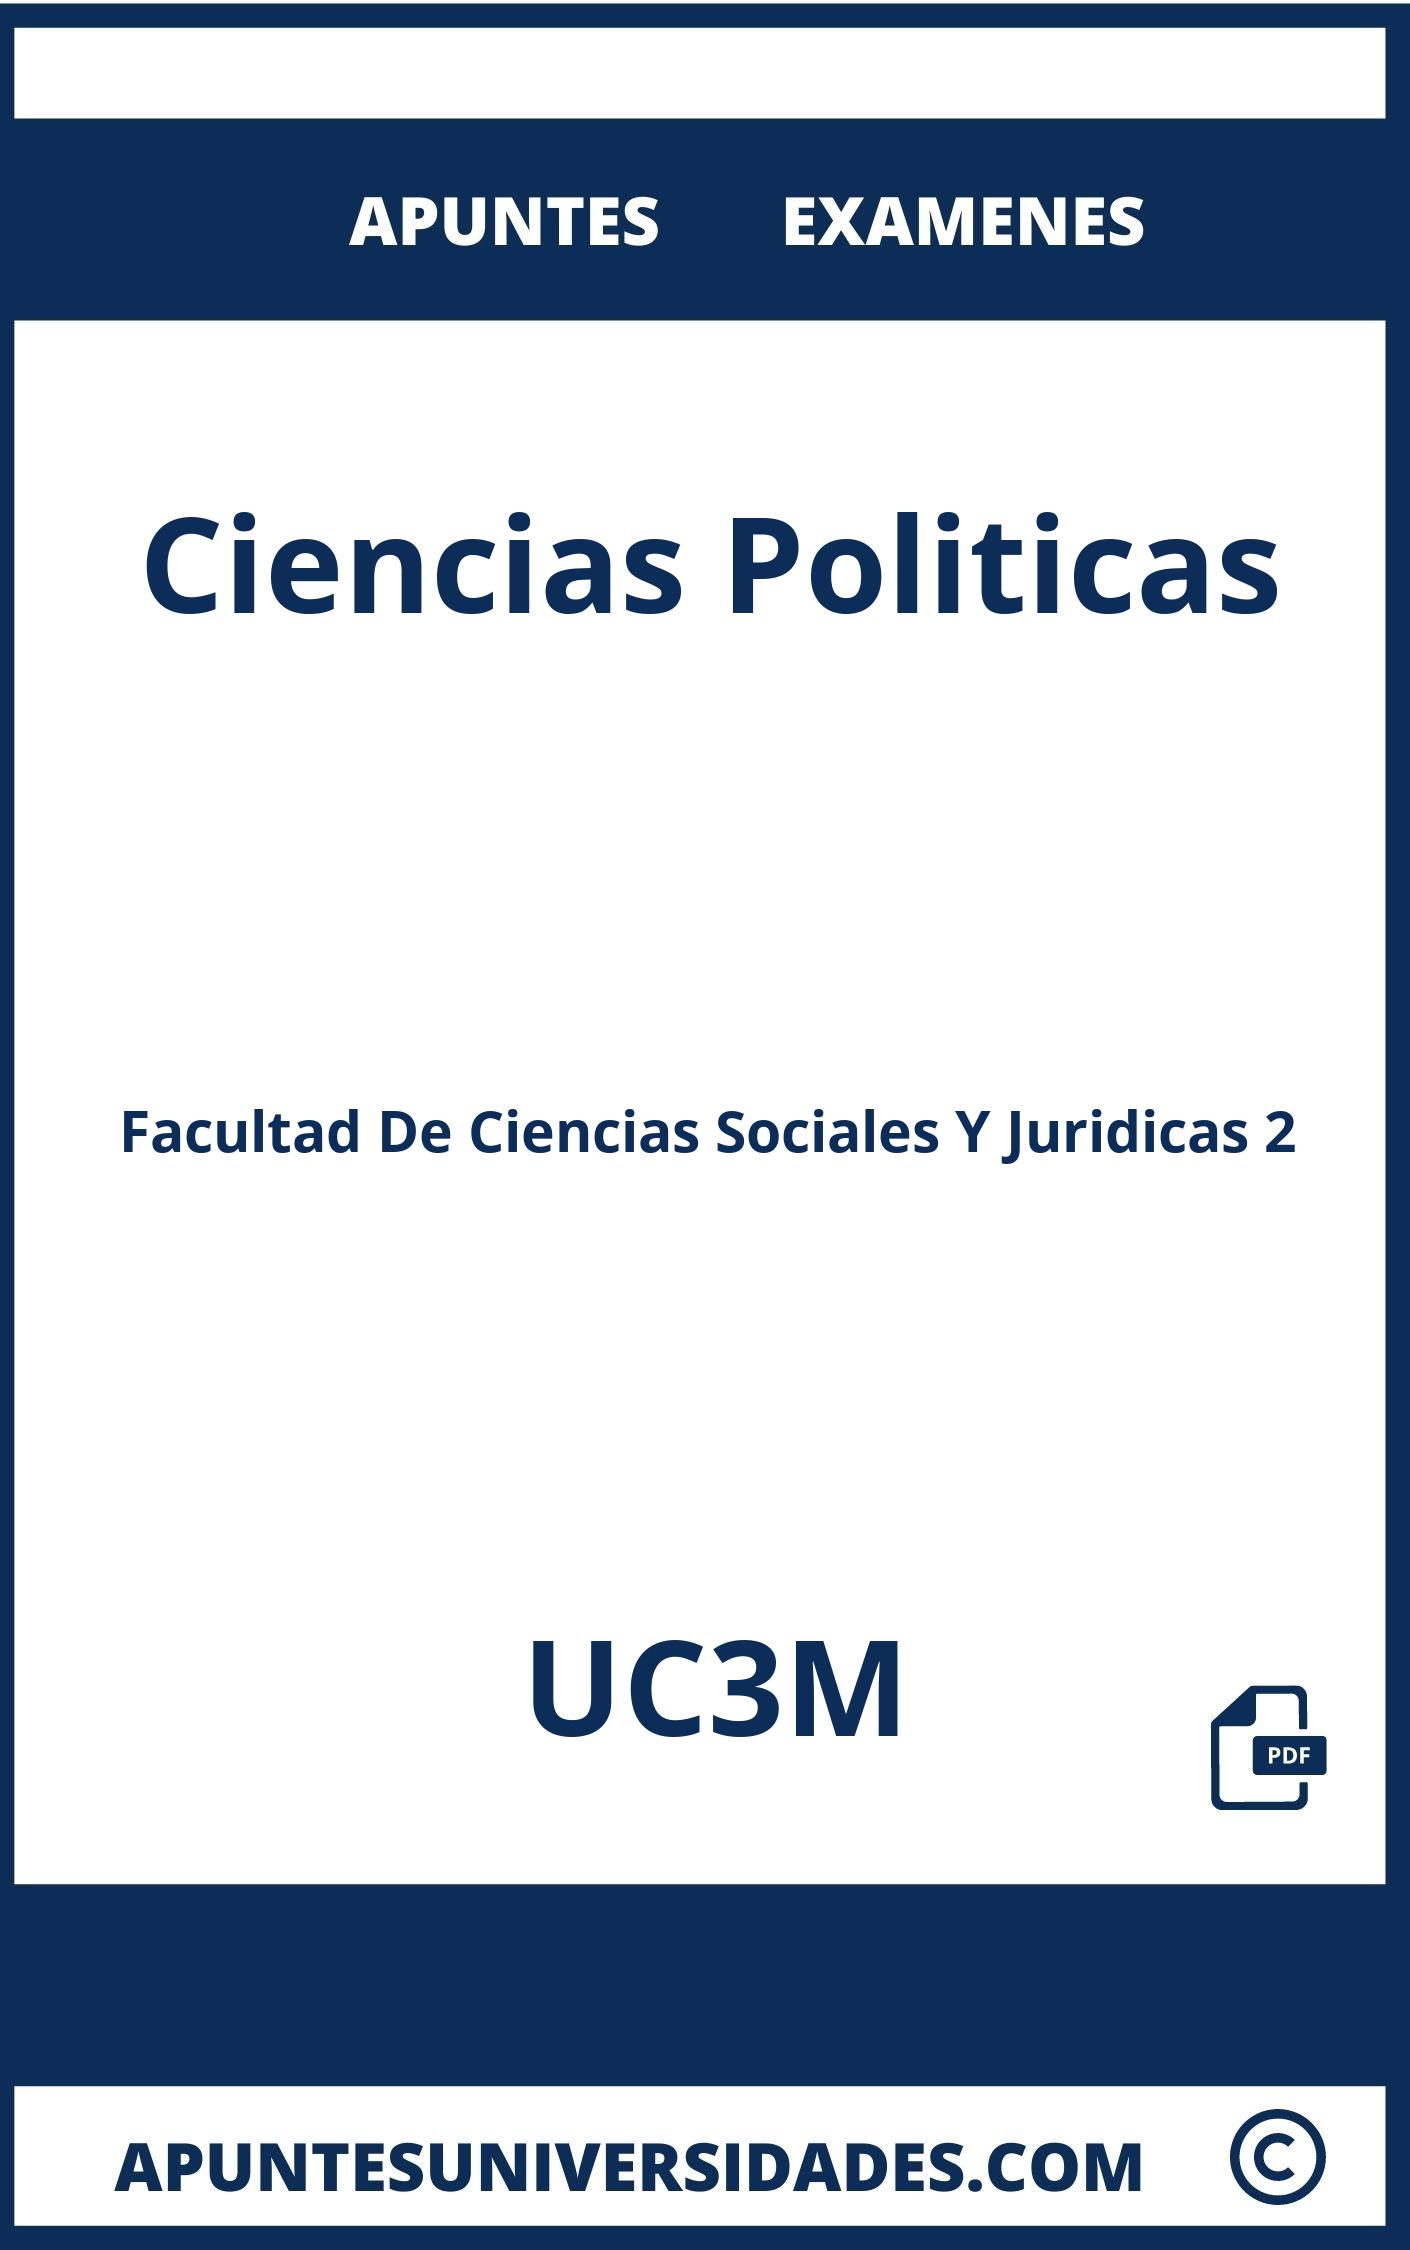 Examenes y Apuntes de Ciencias Politicas UC3M